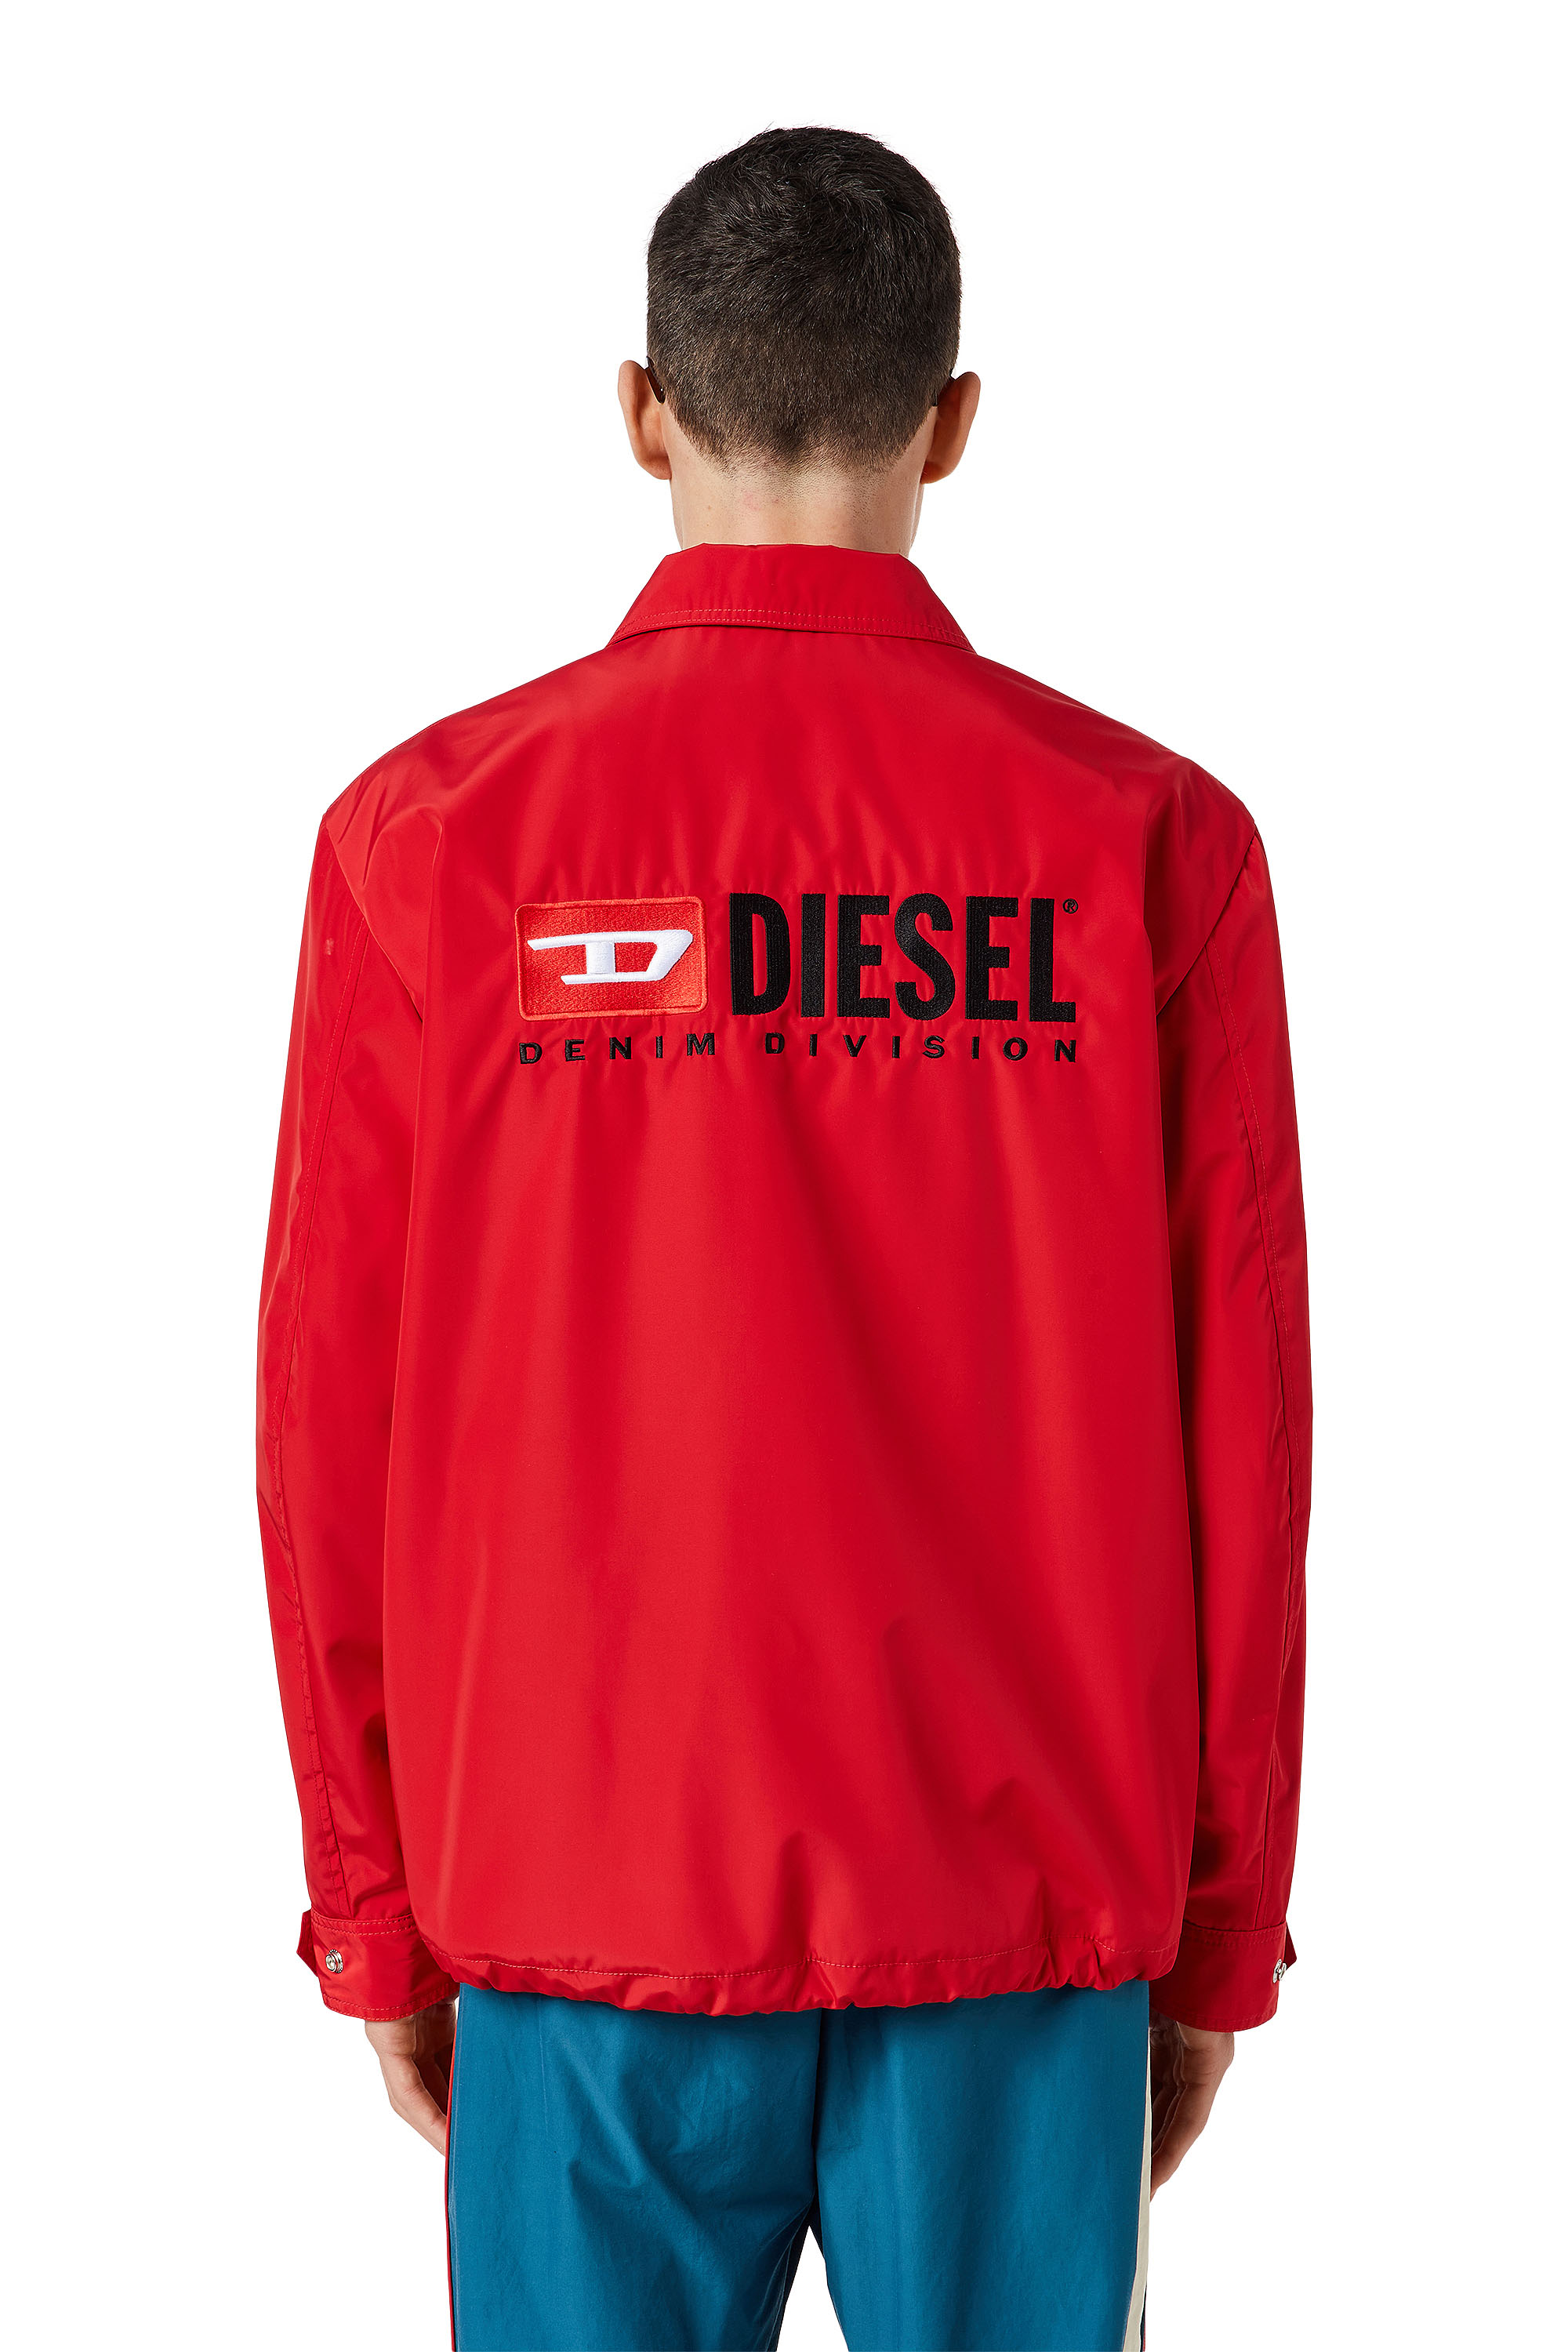 Diesel - J-COAL-NP, Rouge - Image 2